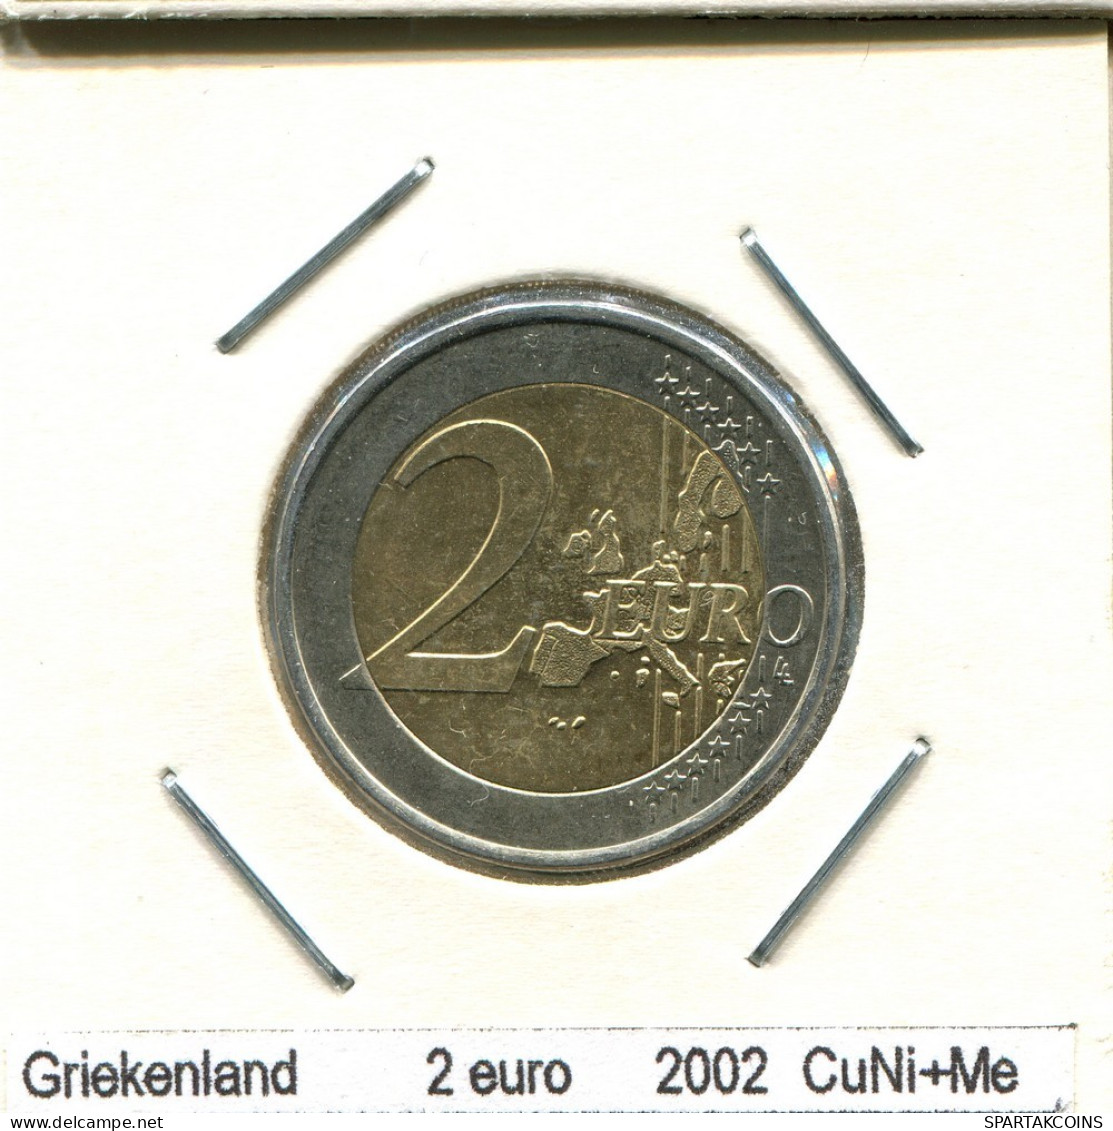 2 EURO 2002 S GRECIA GREECE Moneda BIMETALLIC #AS447.E.A - Greece